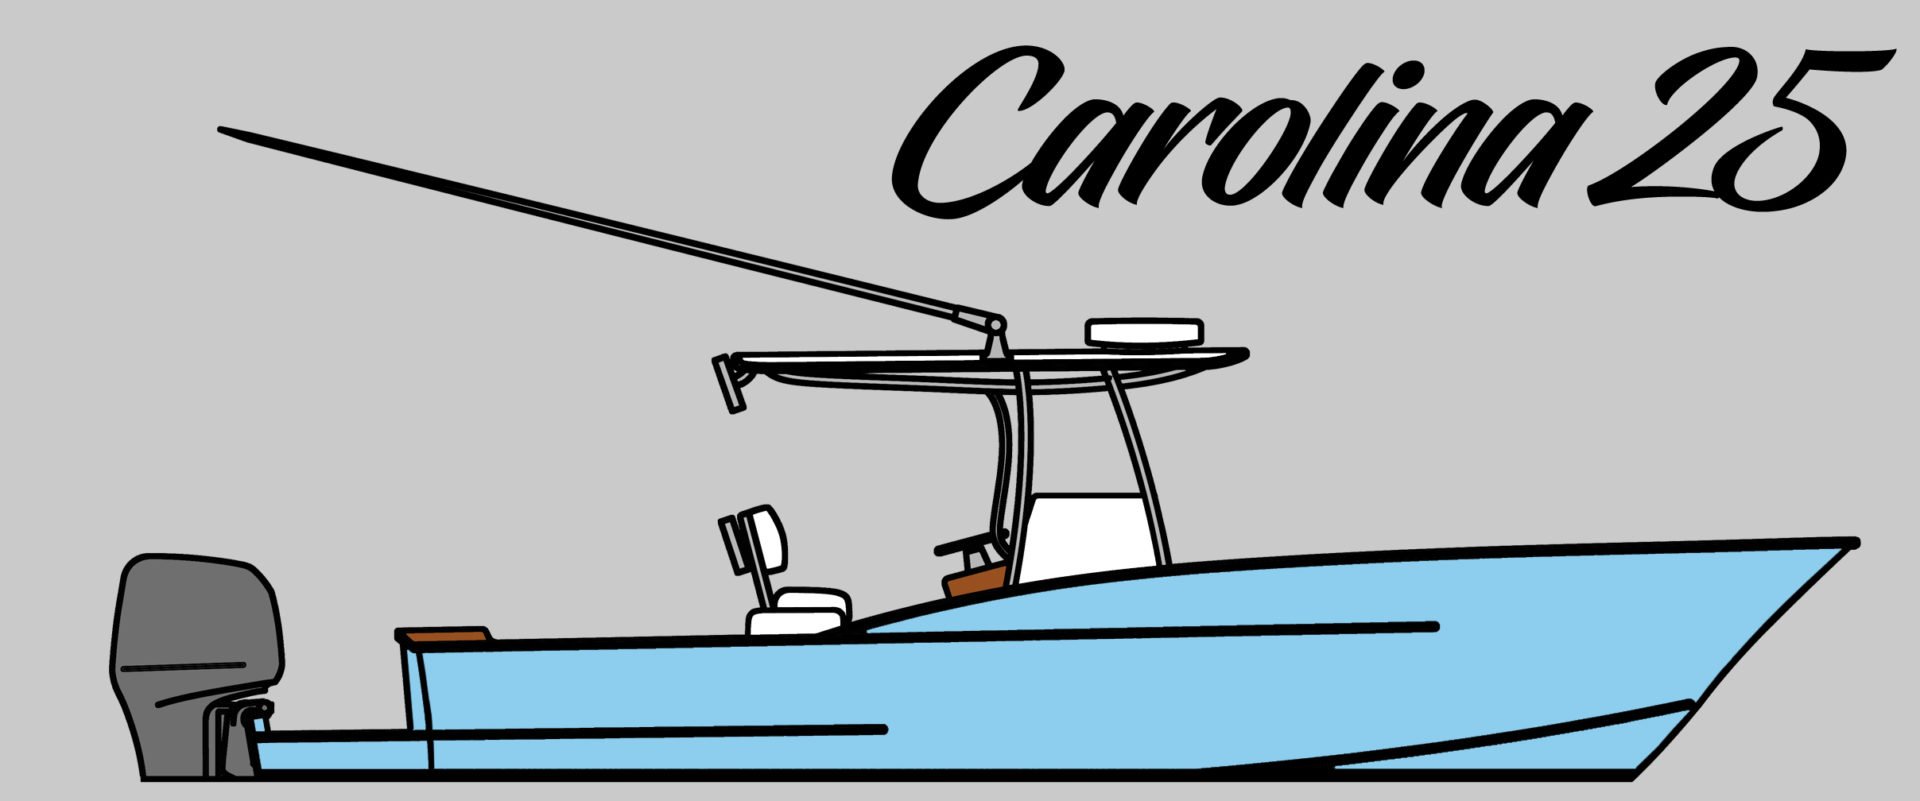 Build a Boat - Carolina 25 Boat Design - Salt Boatworks